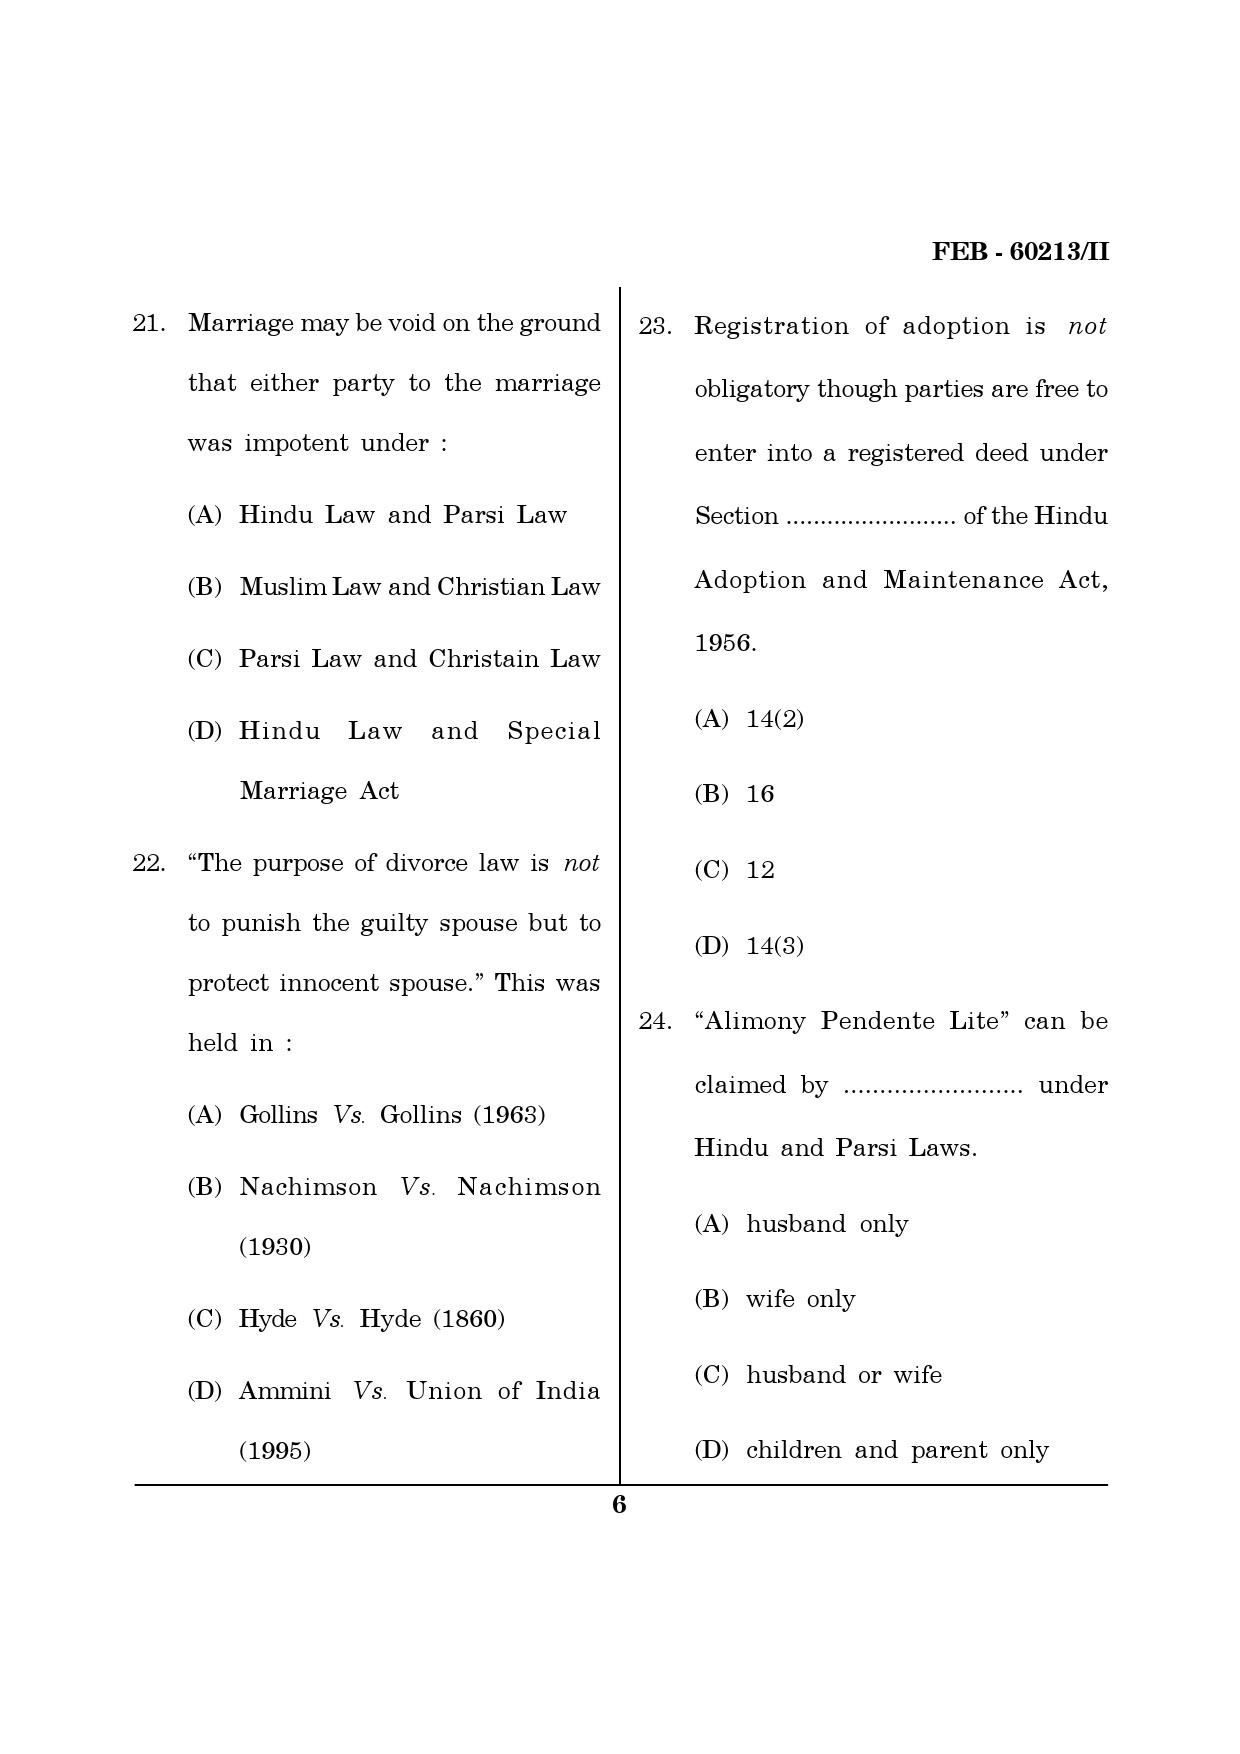 Maharashtra SET Law Question Paper II February 2013 6